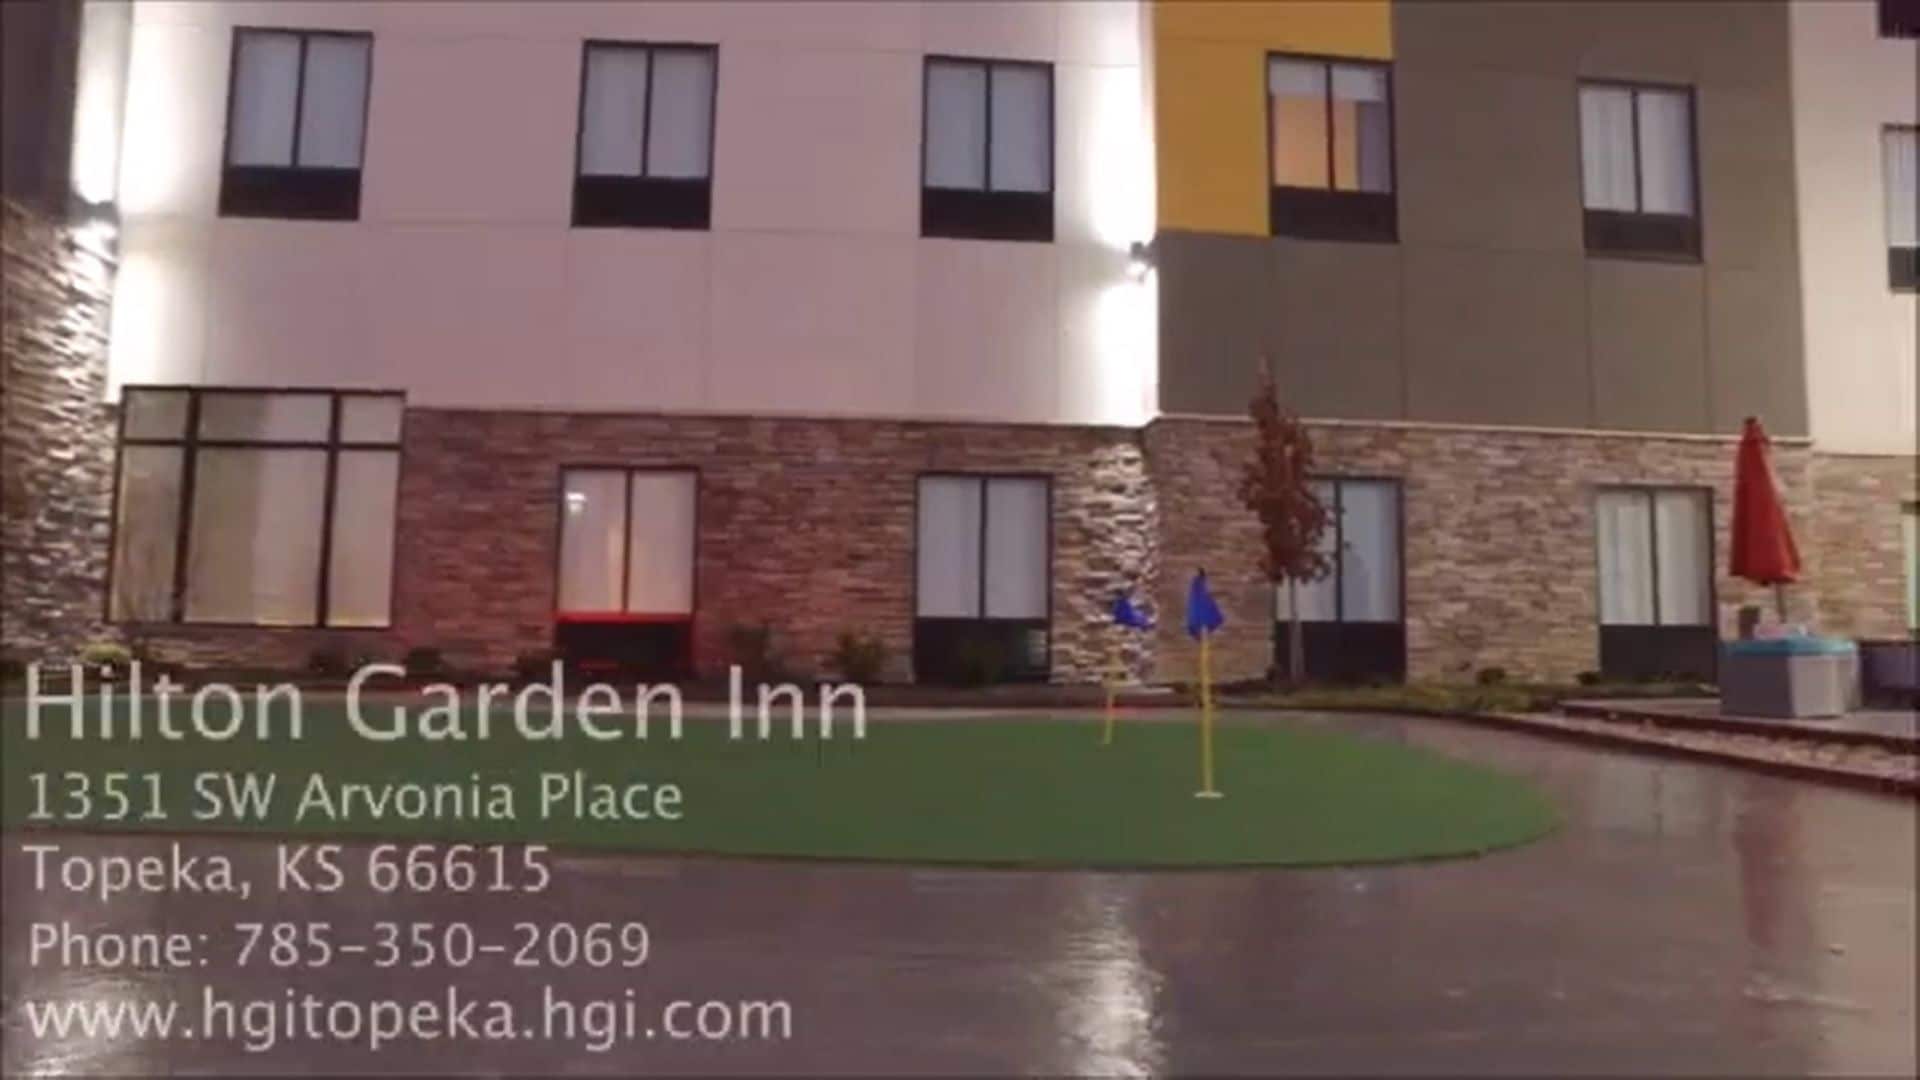 Hilton Garden Inn Topeka, KS in Topeka!